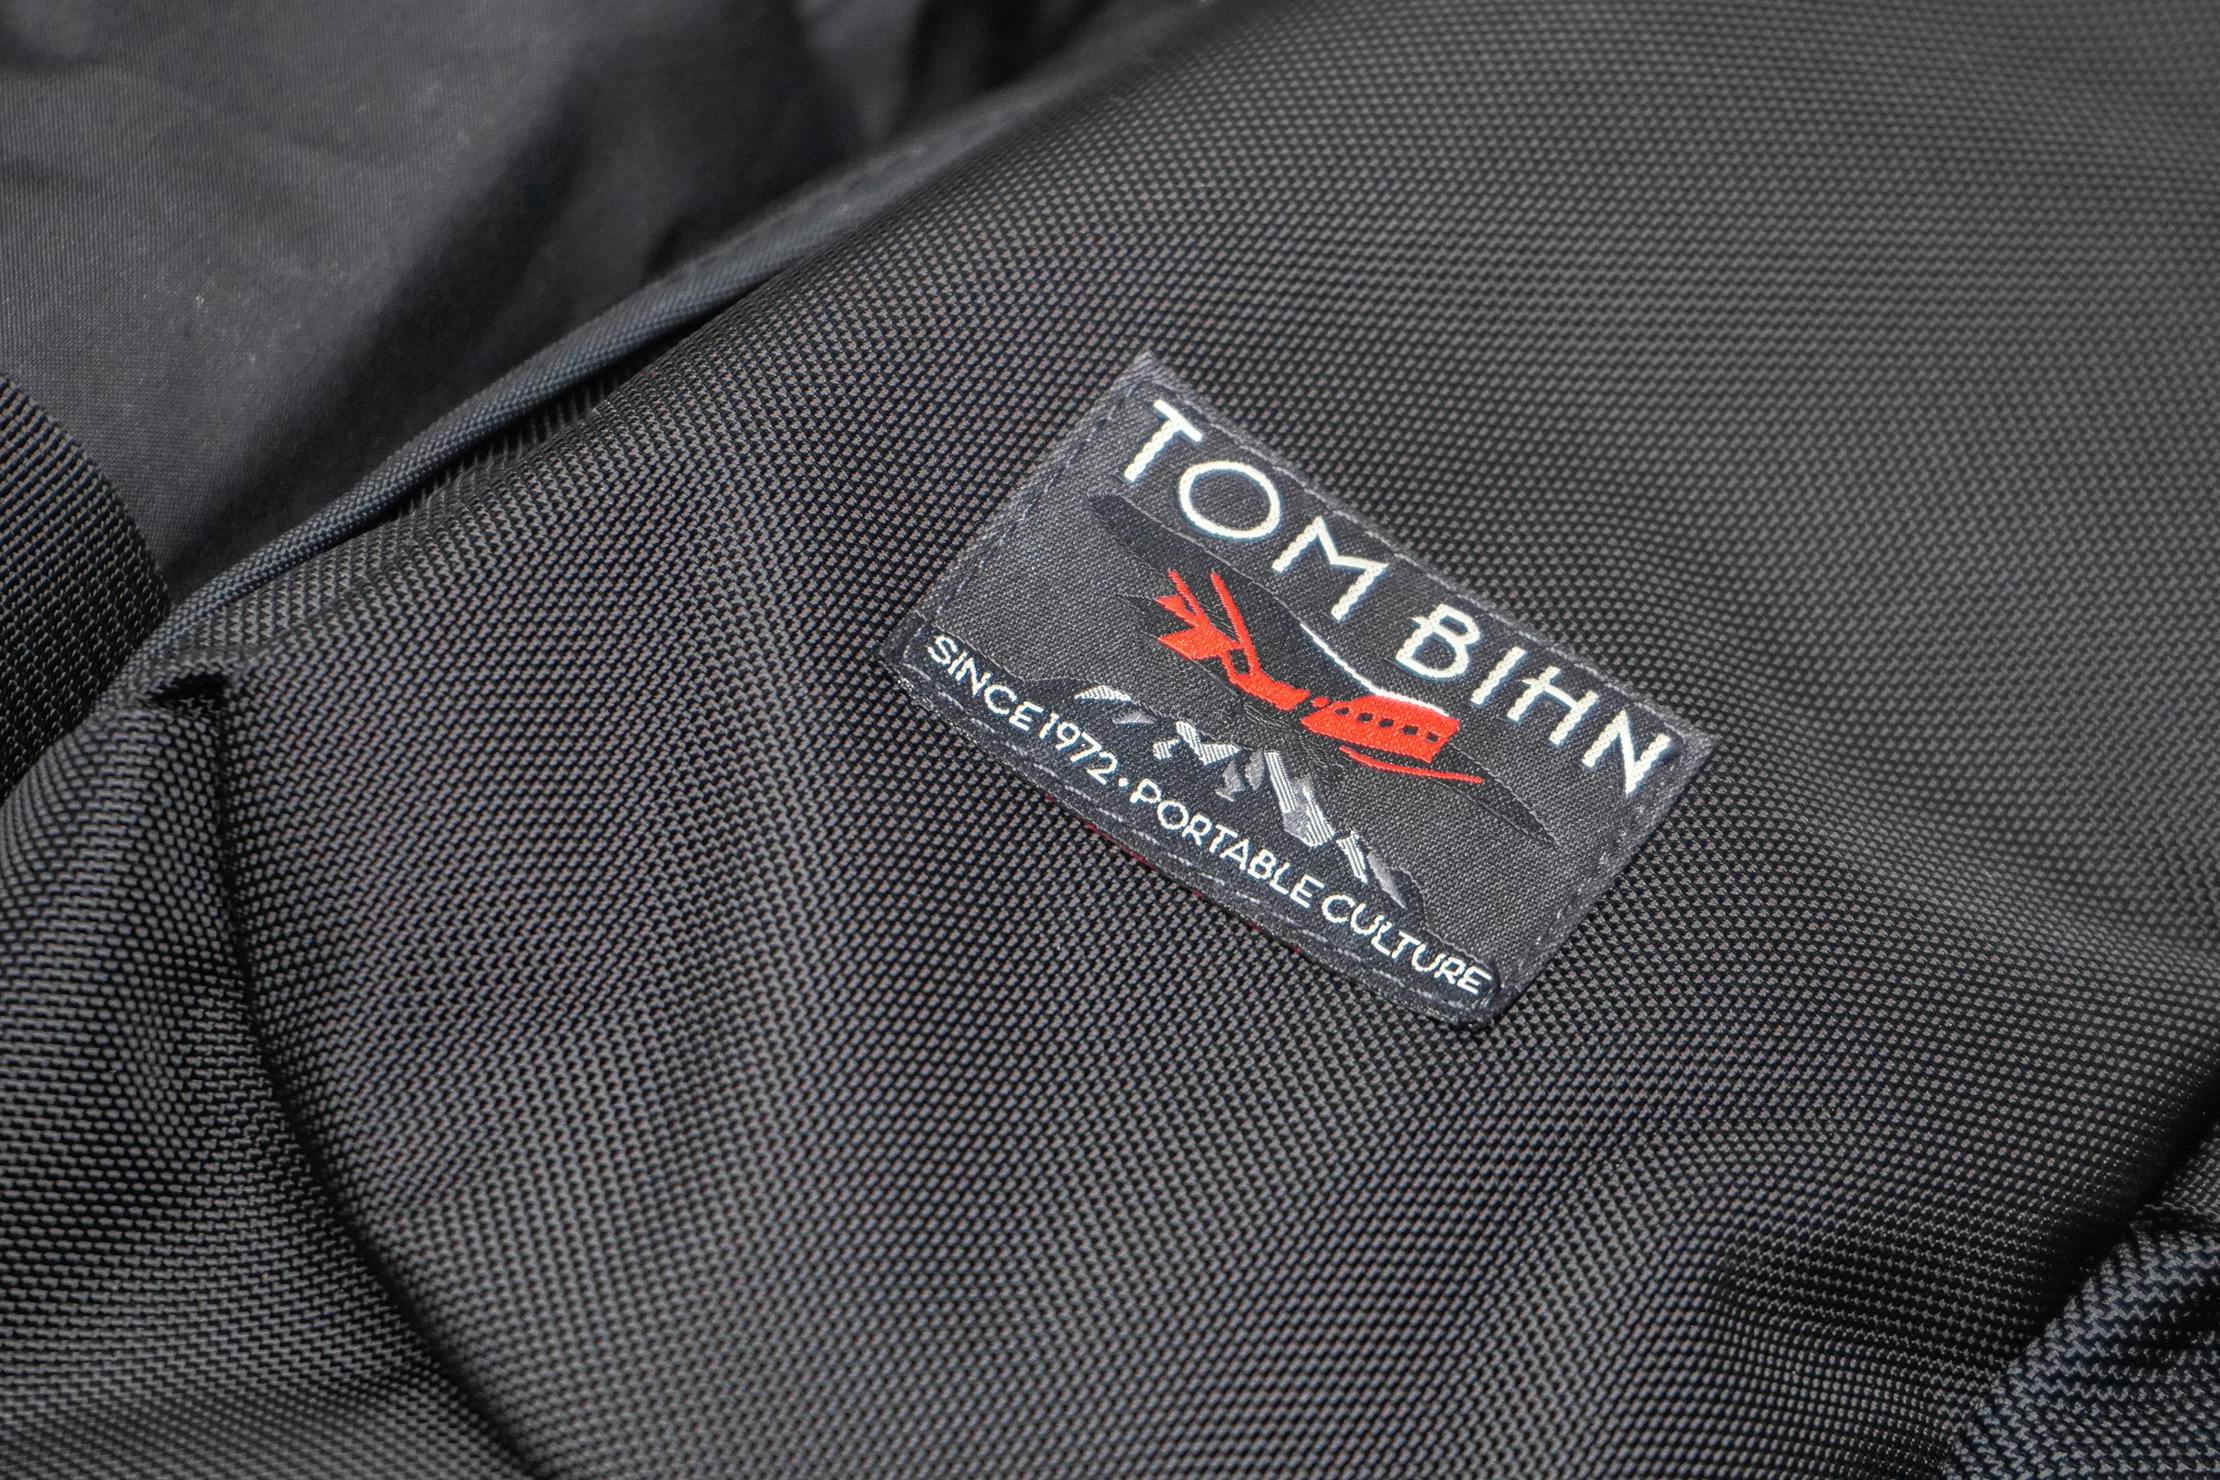 Tom Bihn Brain Bag Material and Logo